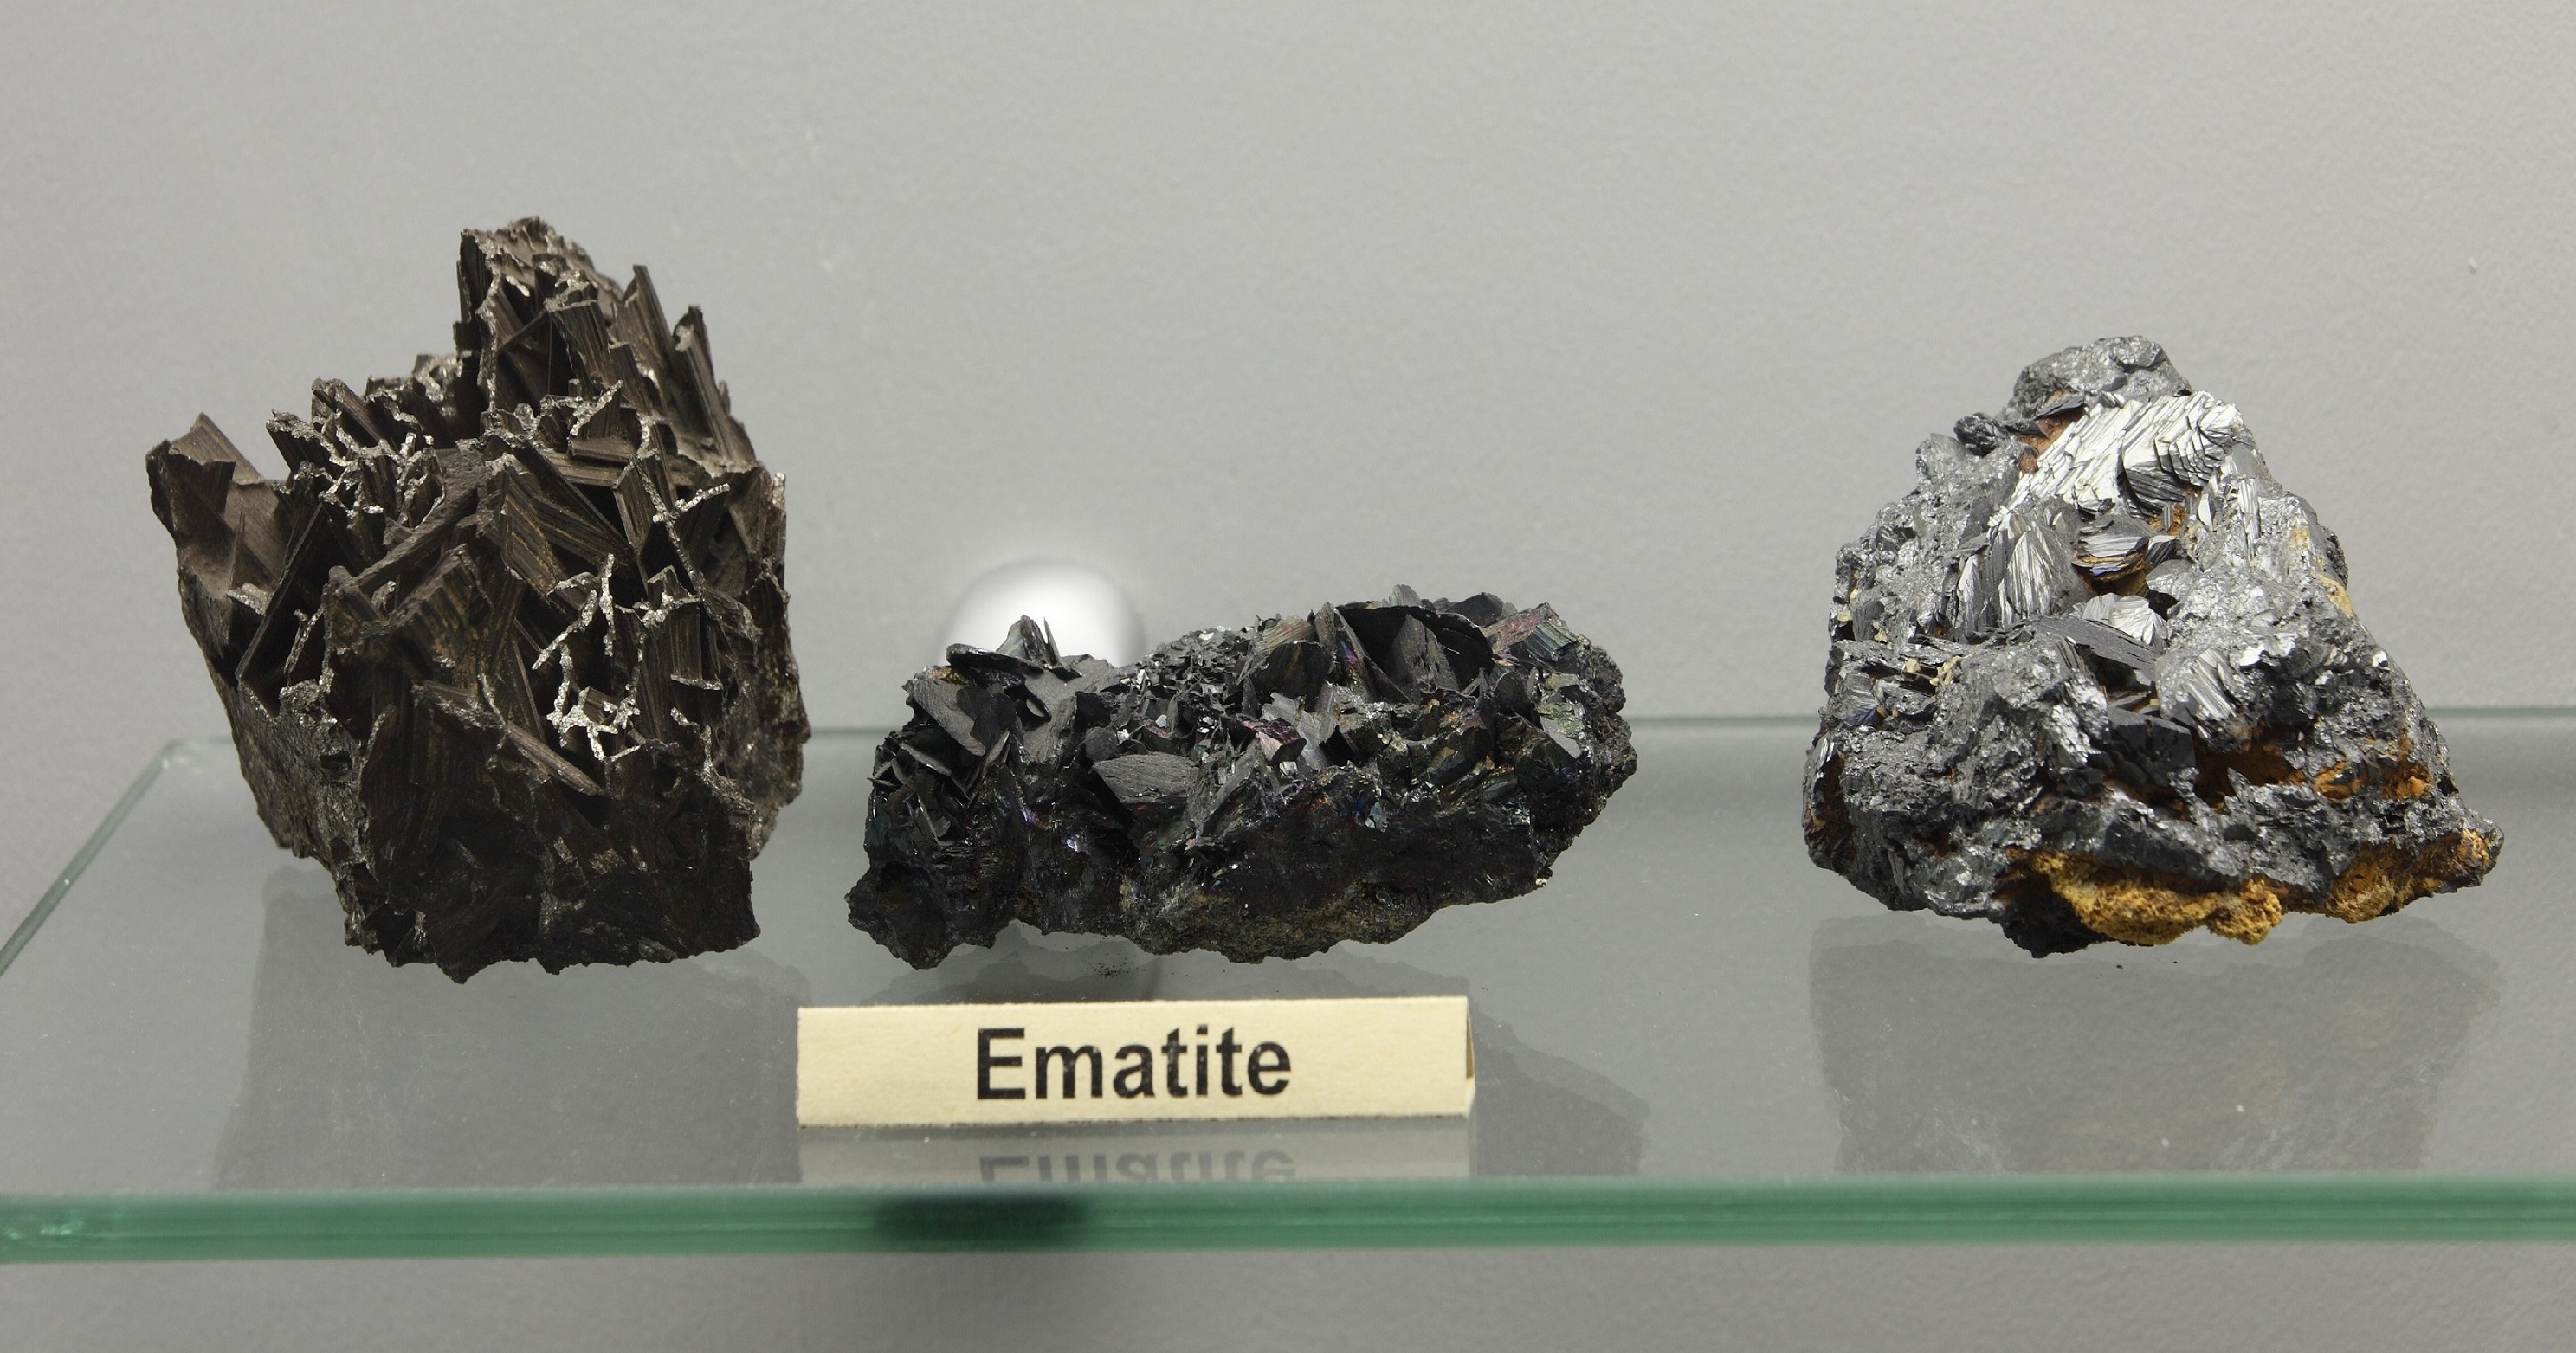 Ematite: minerale di ferro costituito da lamine.